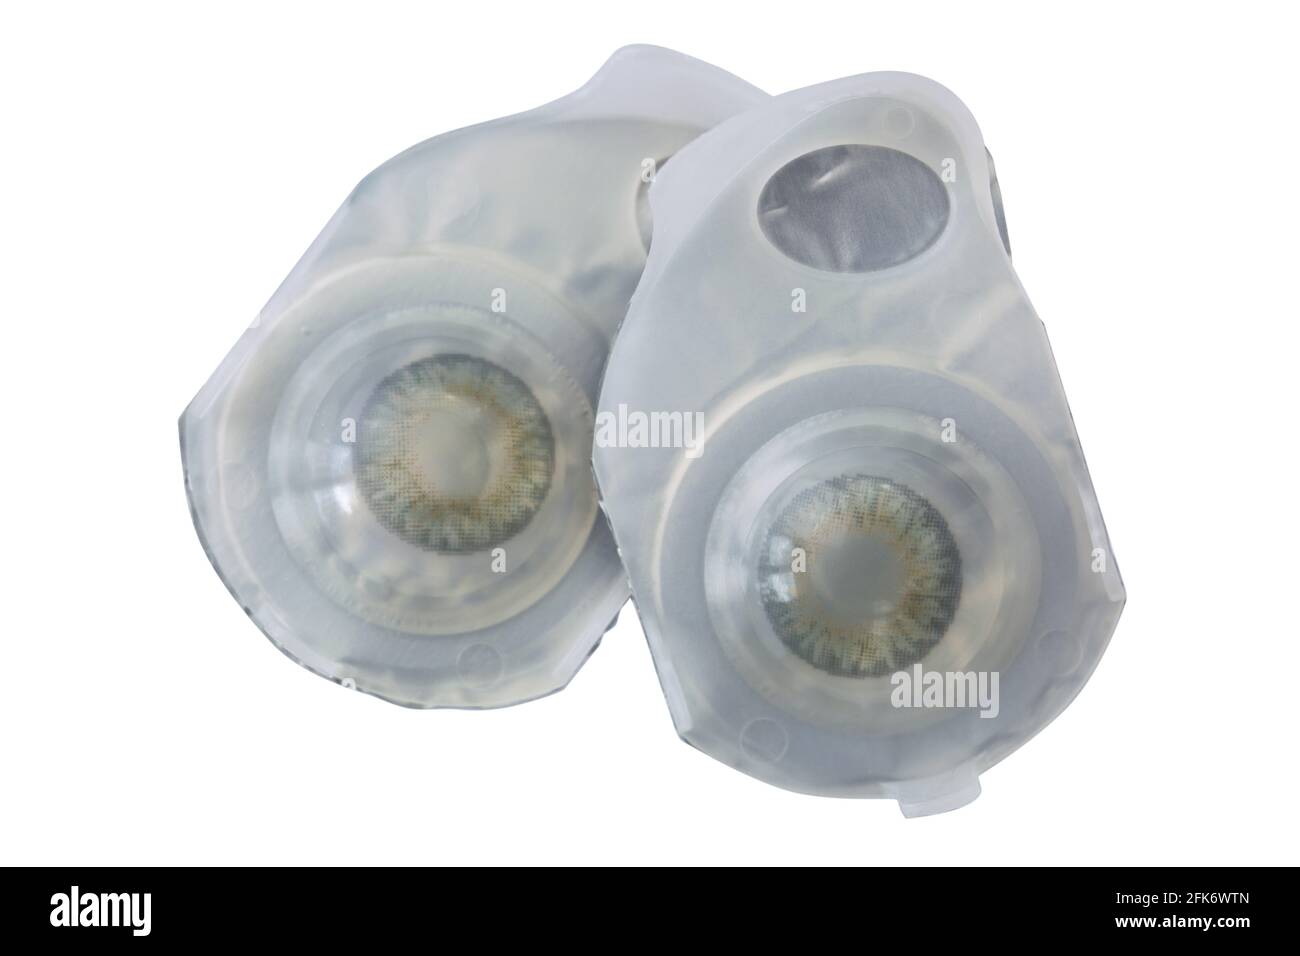 Paar brandneue atmungsaktive monatliche Einweg-Kontaktlinsen in Graue Farbe aus Silikon-Hydrogel isoliert auf weißem Hintergrund Stockfoto